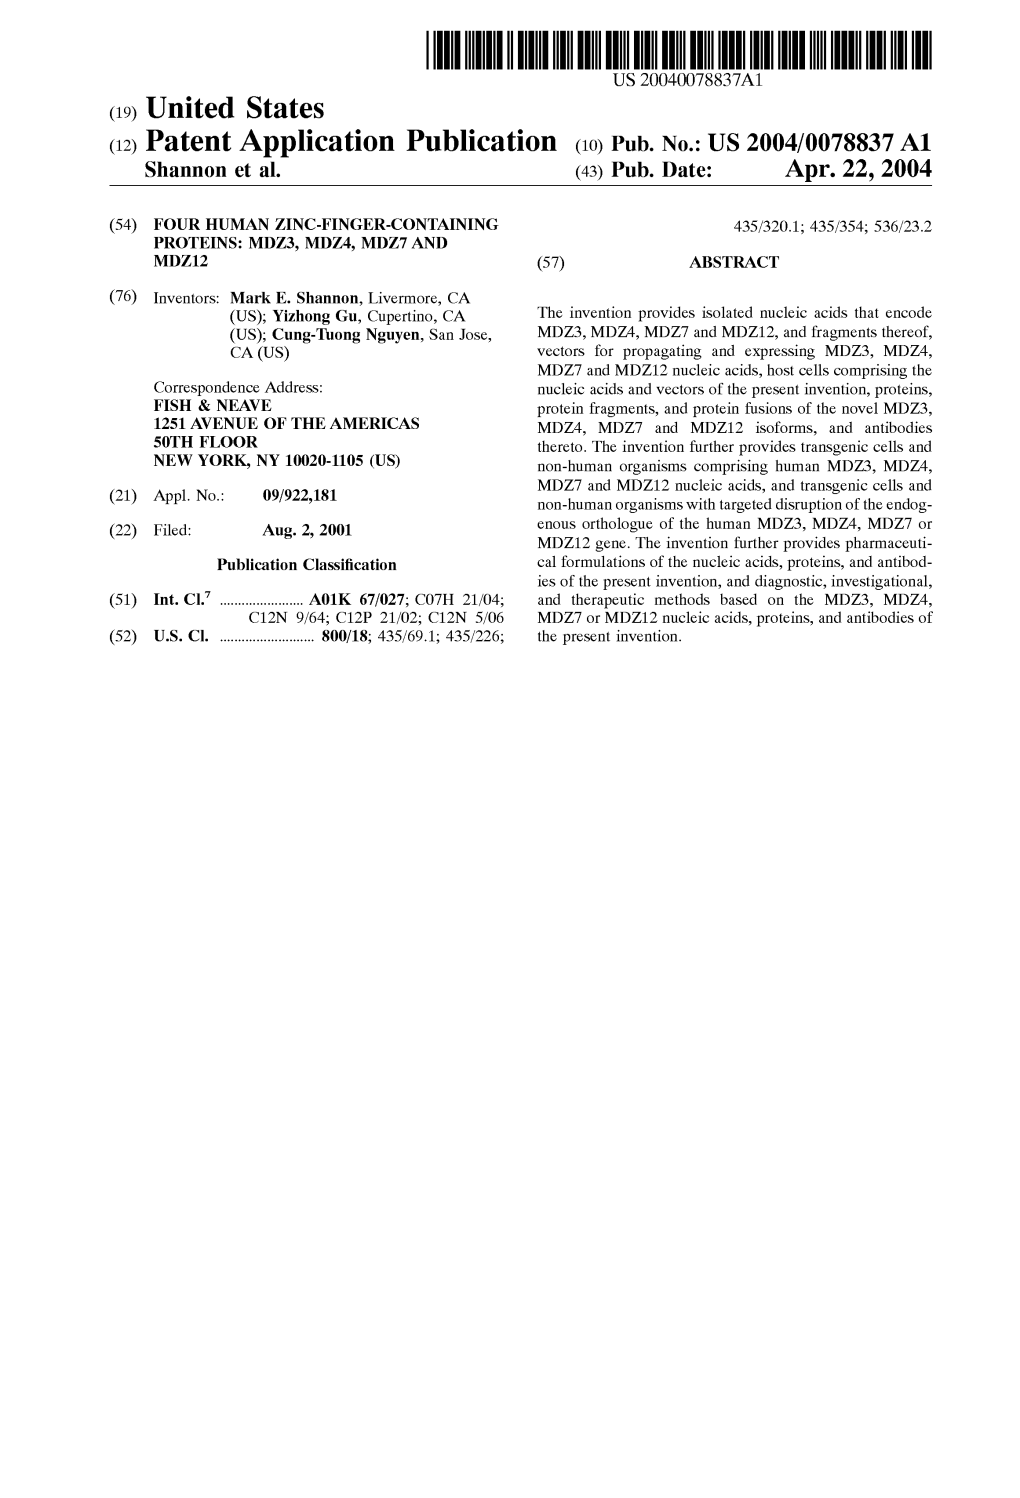 (12) Patent Application Publication (10) Pub. No.: US 2004/0078837 A1 Shannon Et Al